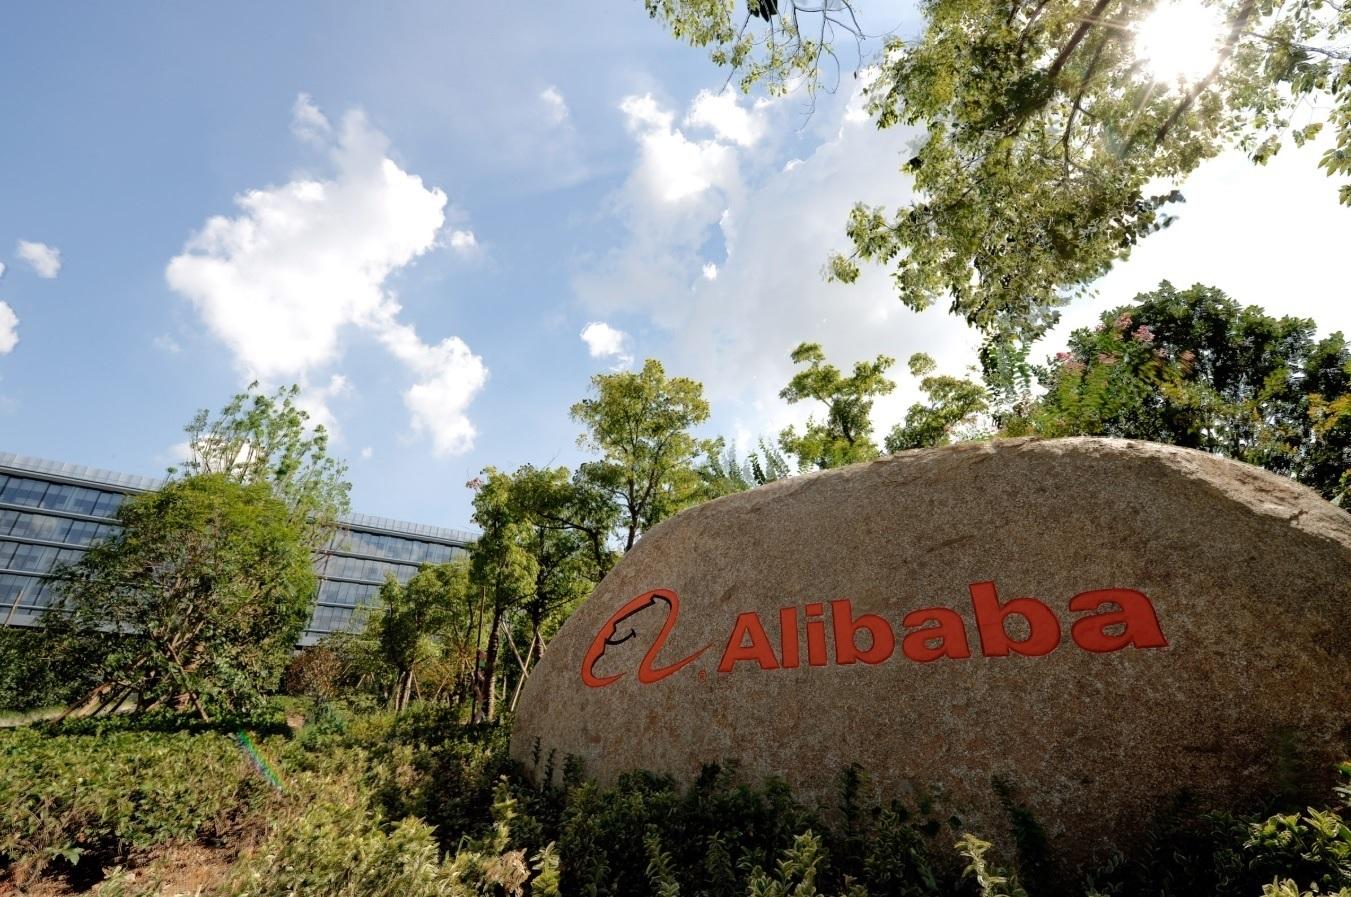 Oficinas de Alibaba